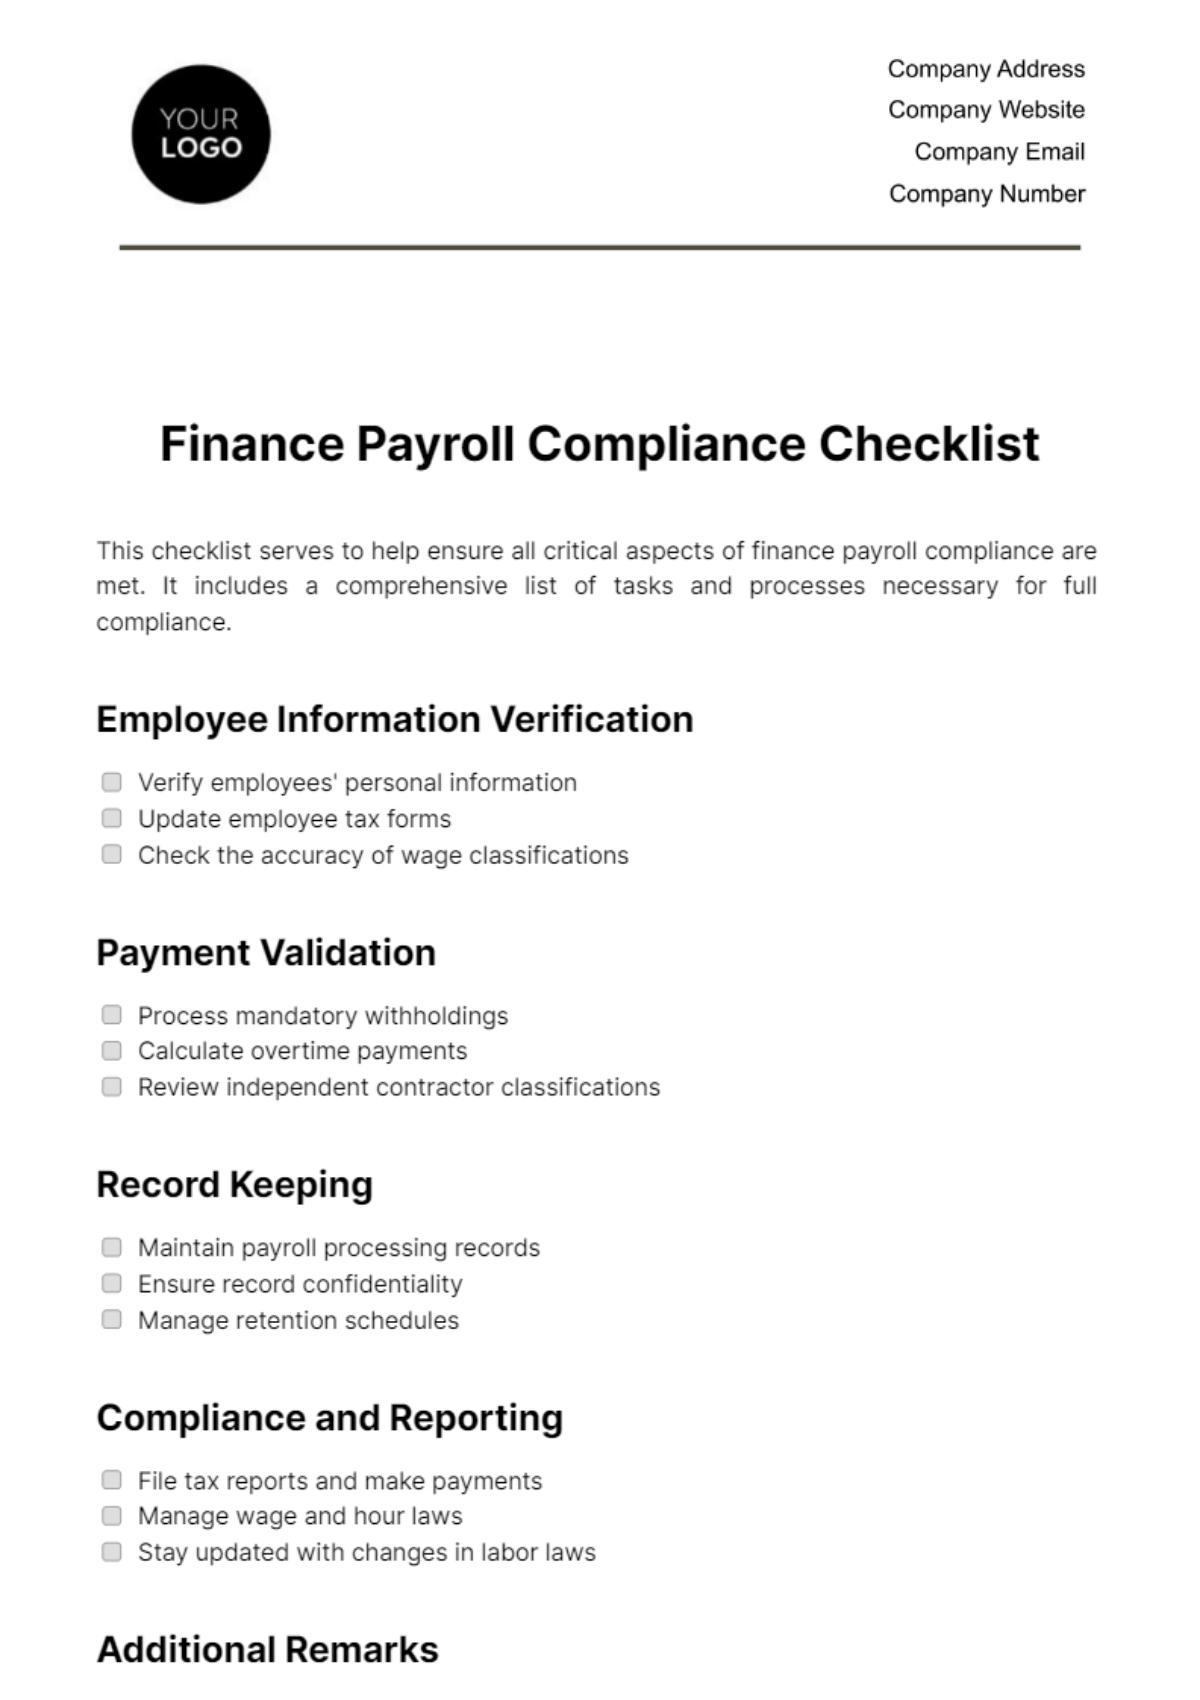 Finance Payroll Compliance Checklist Template